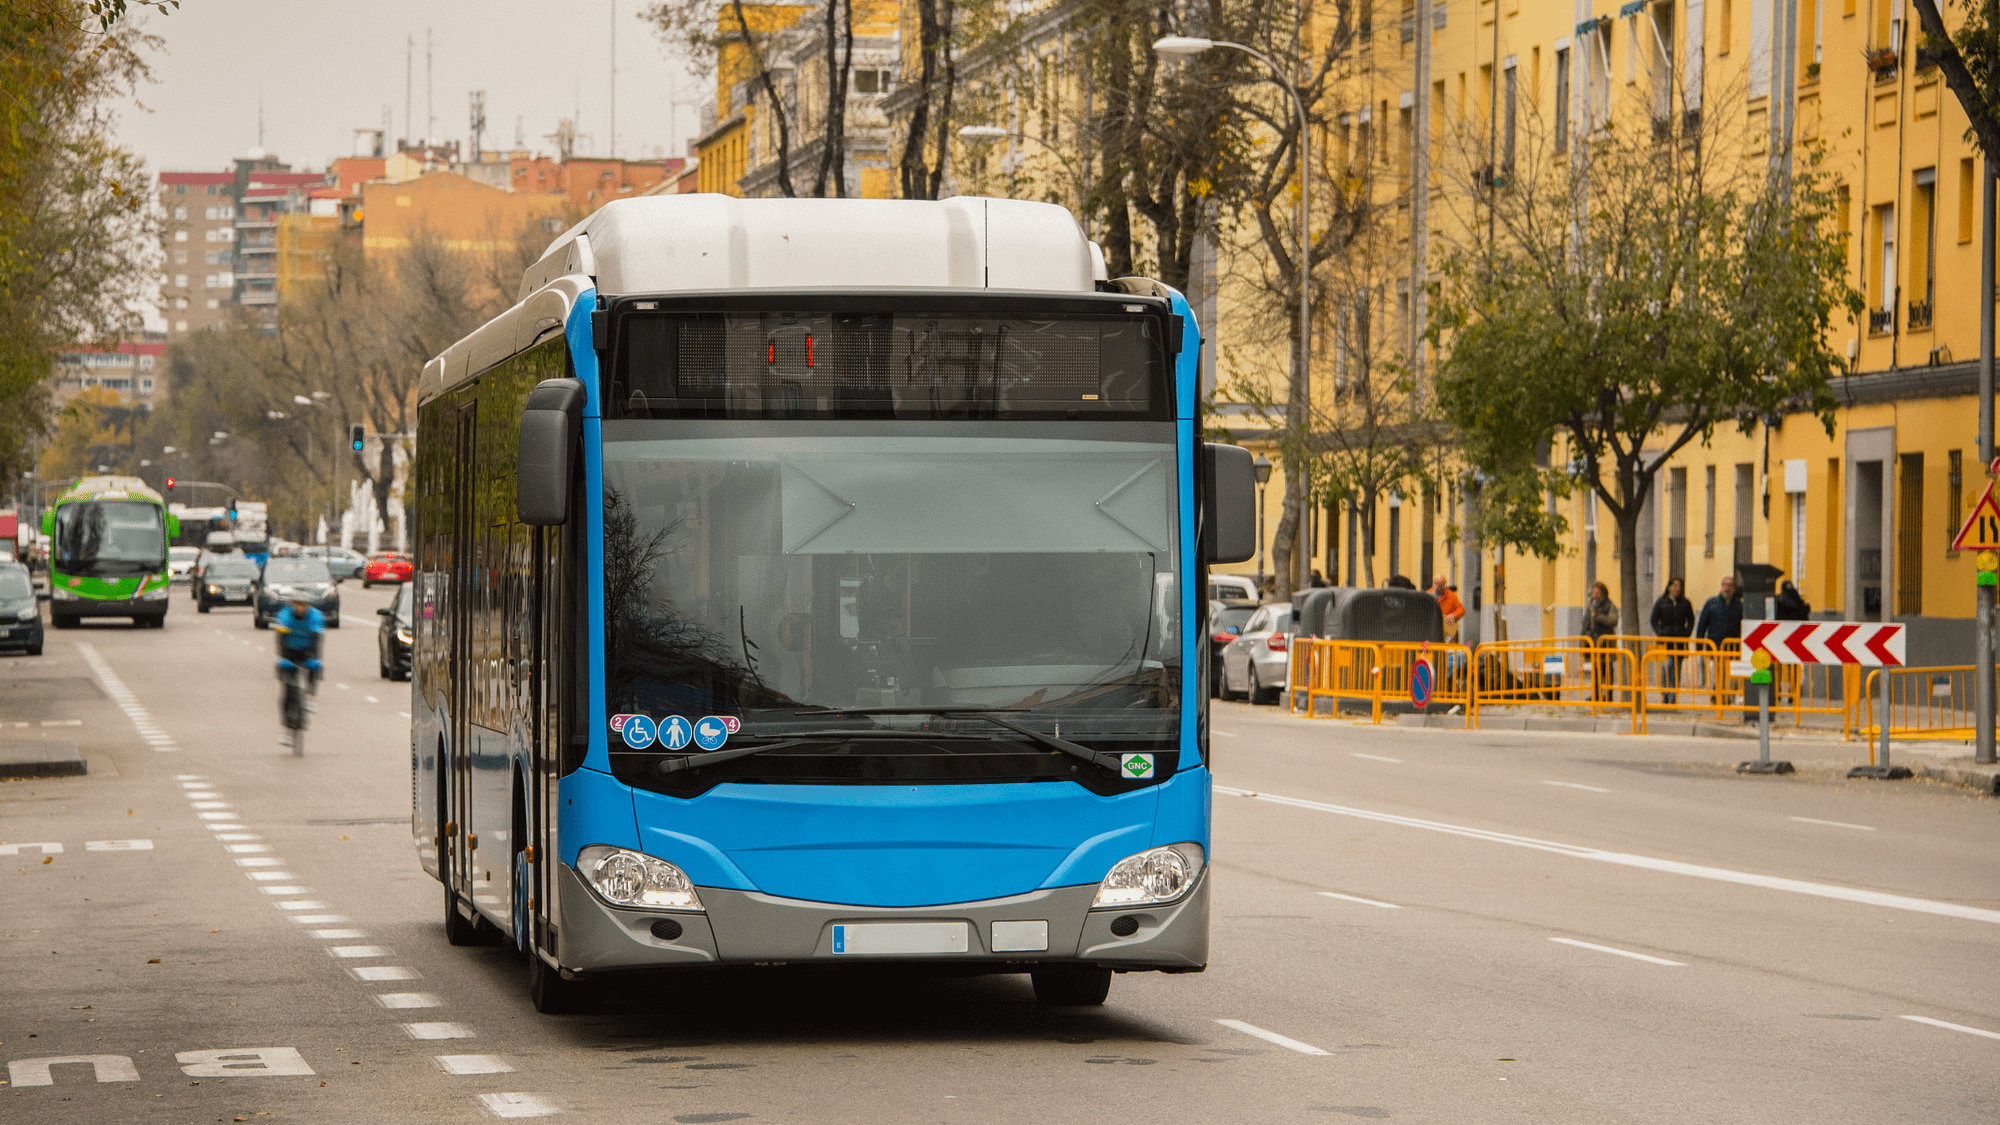 Bus & Transport Fleet Management Software